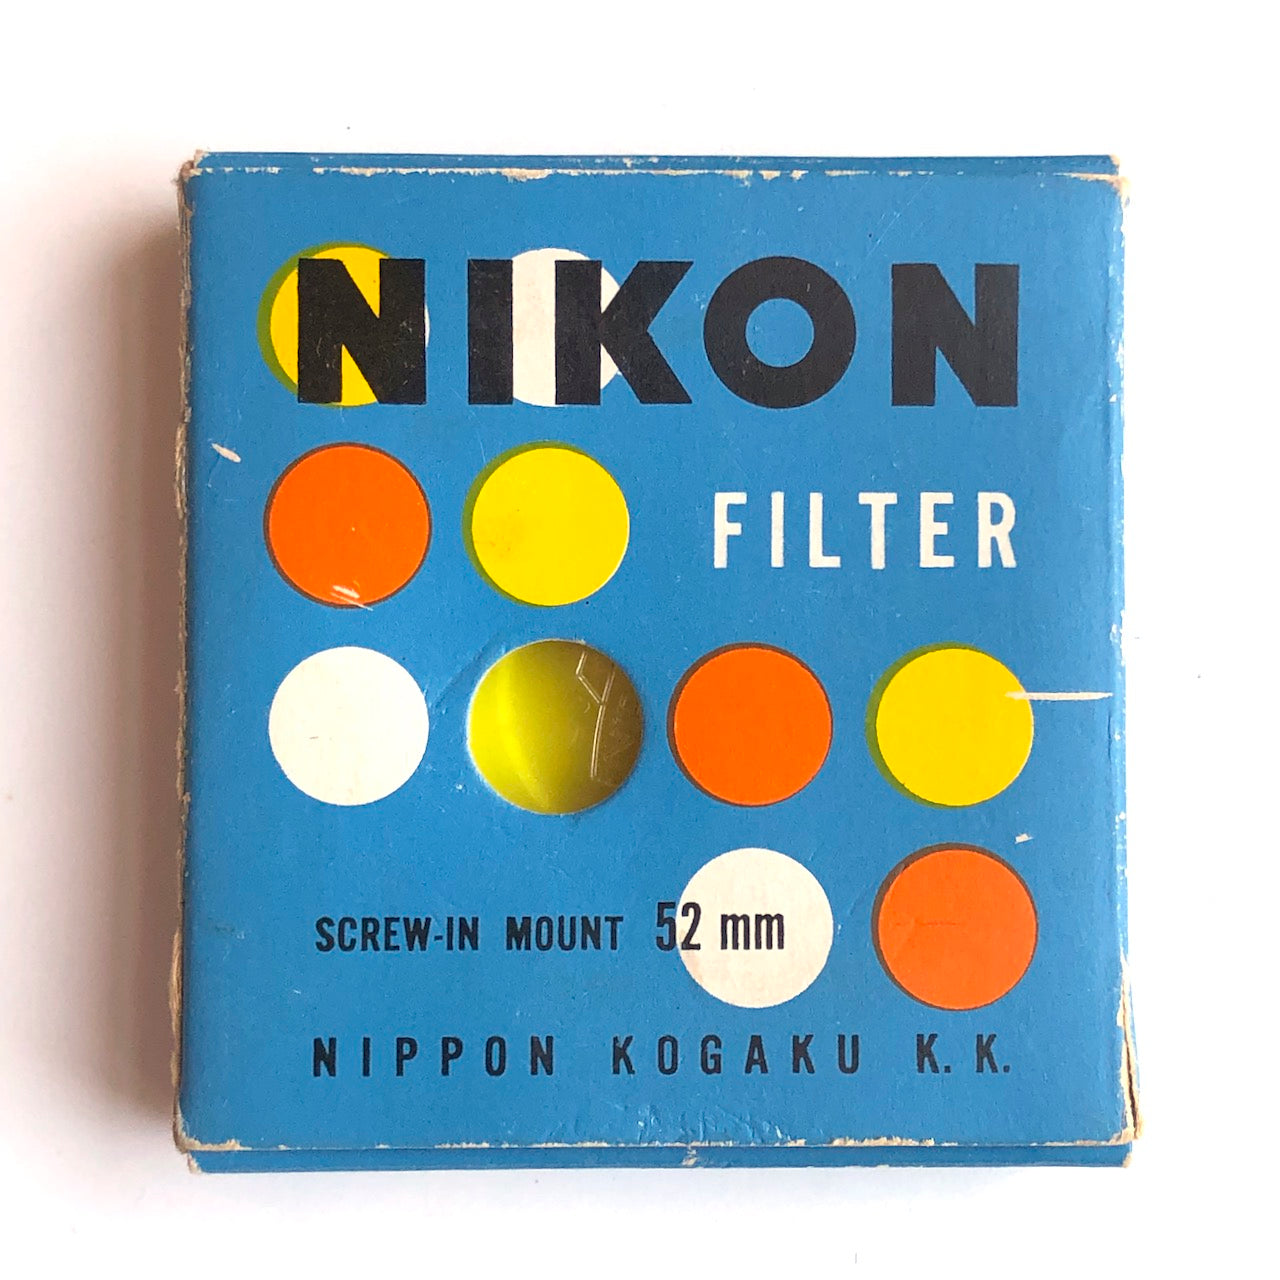 Nikon Y48 yellow filter with original box